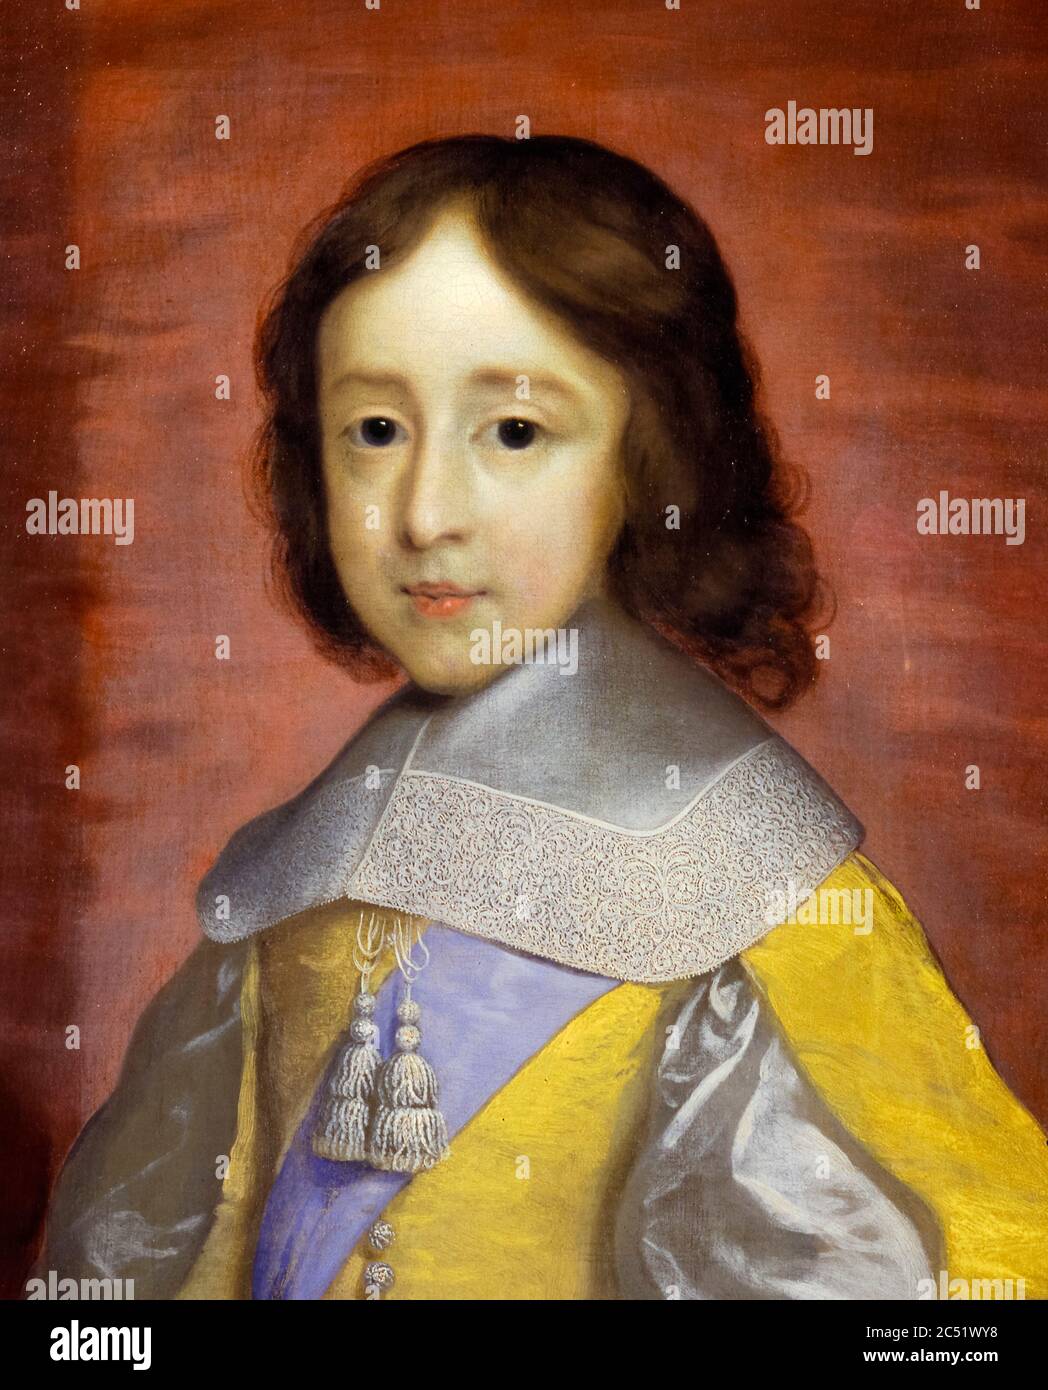 Wilhelm III. Von England, Prinz von Oranien, (1650-1702), als Kind, später König von England, Irland und Schottland, Porträtmalerei von Cornelius Johnson, 1657 Stockfoto